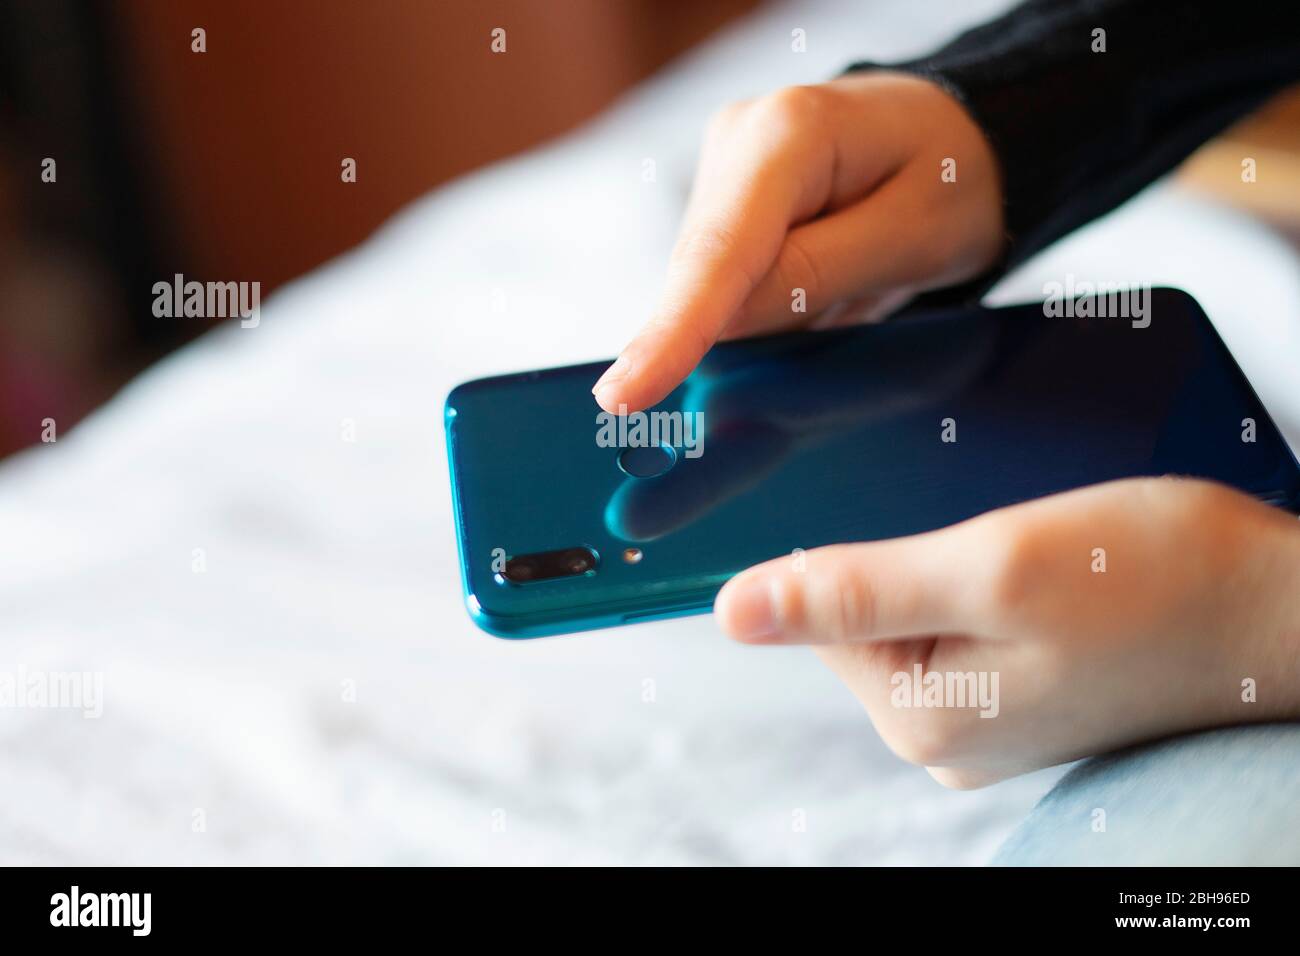 Handentriegelung des Mobiltelefons mit Fingerabdruck. Stockfoto